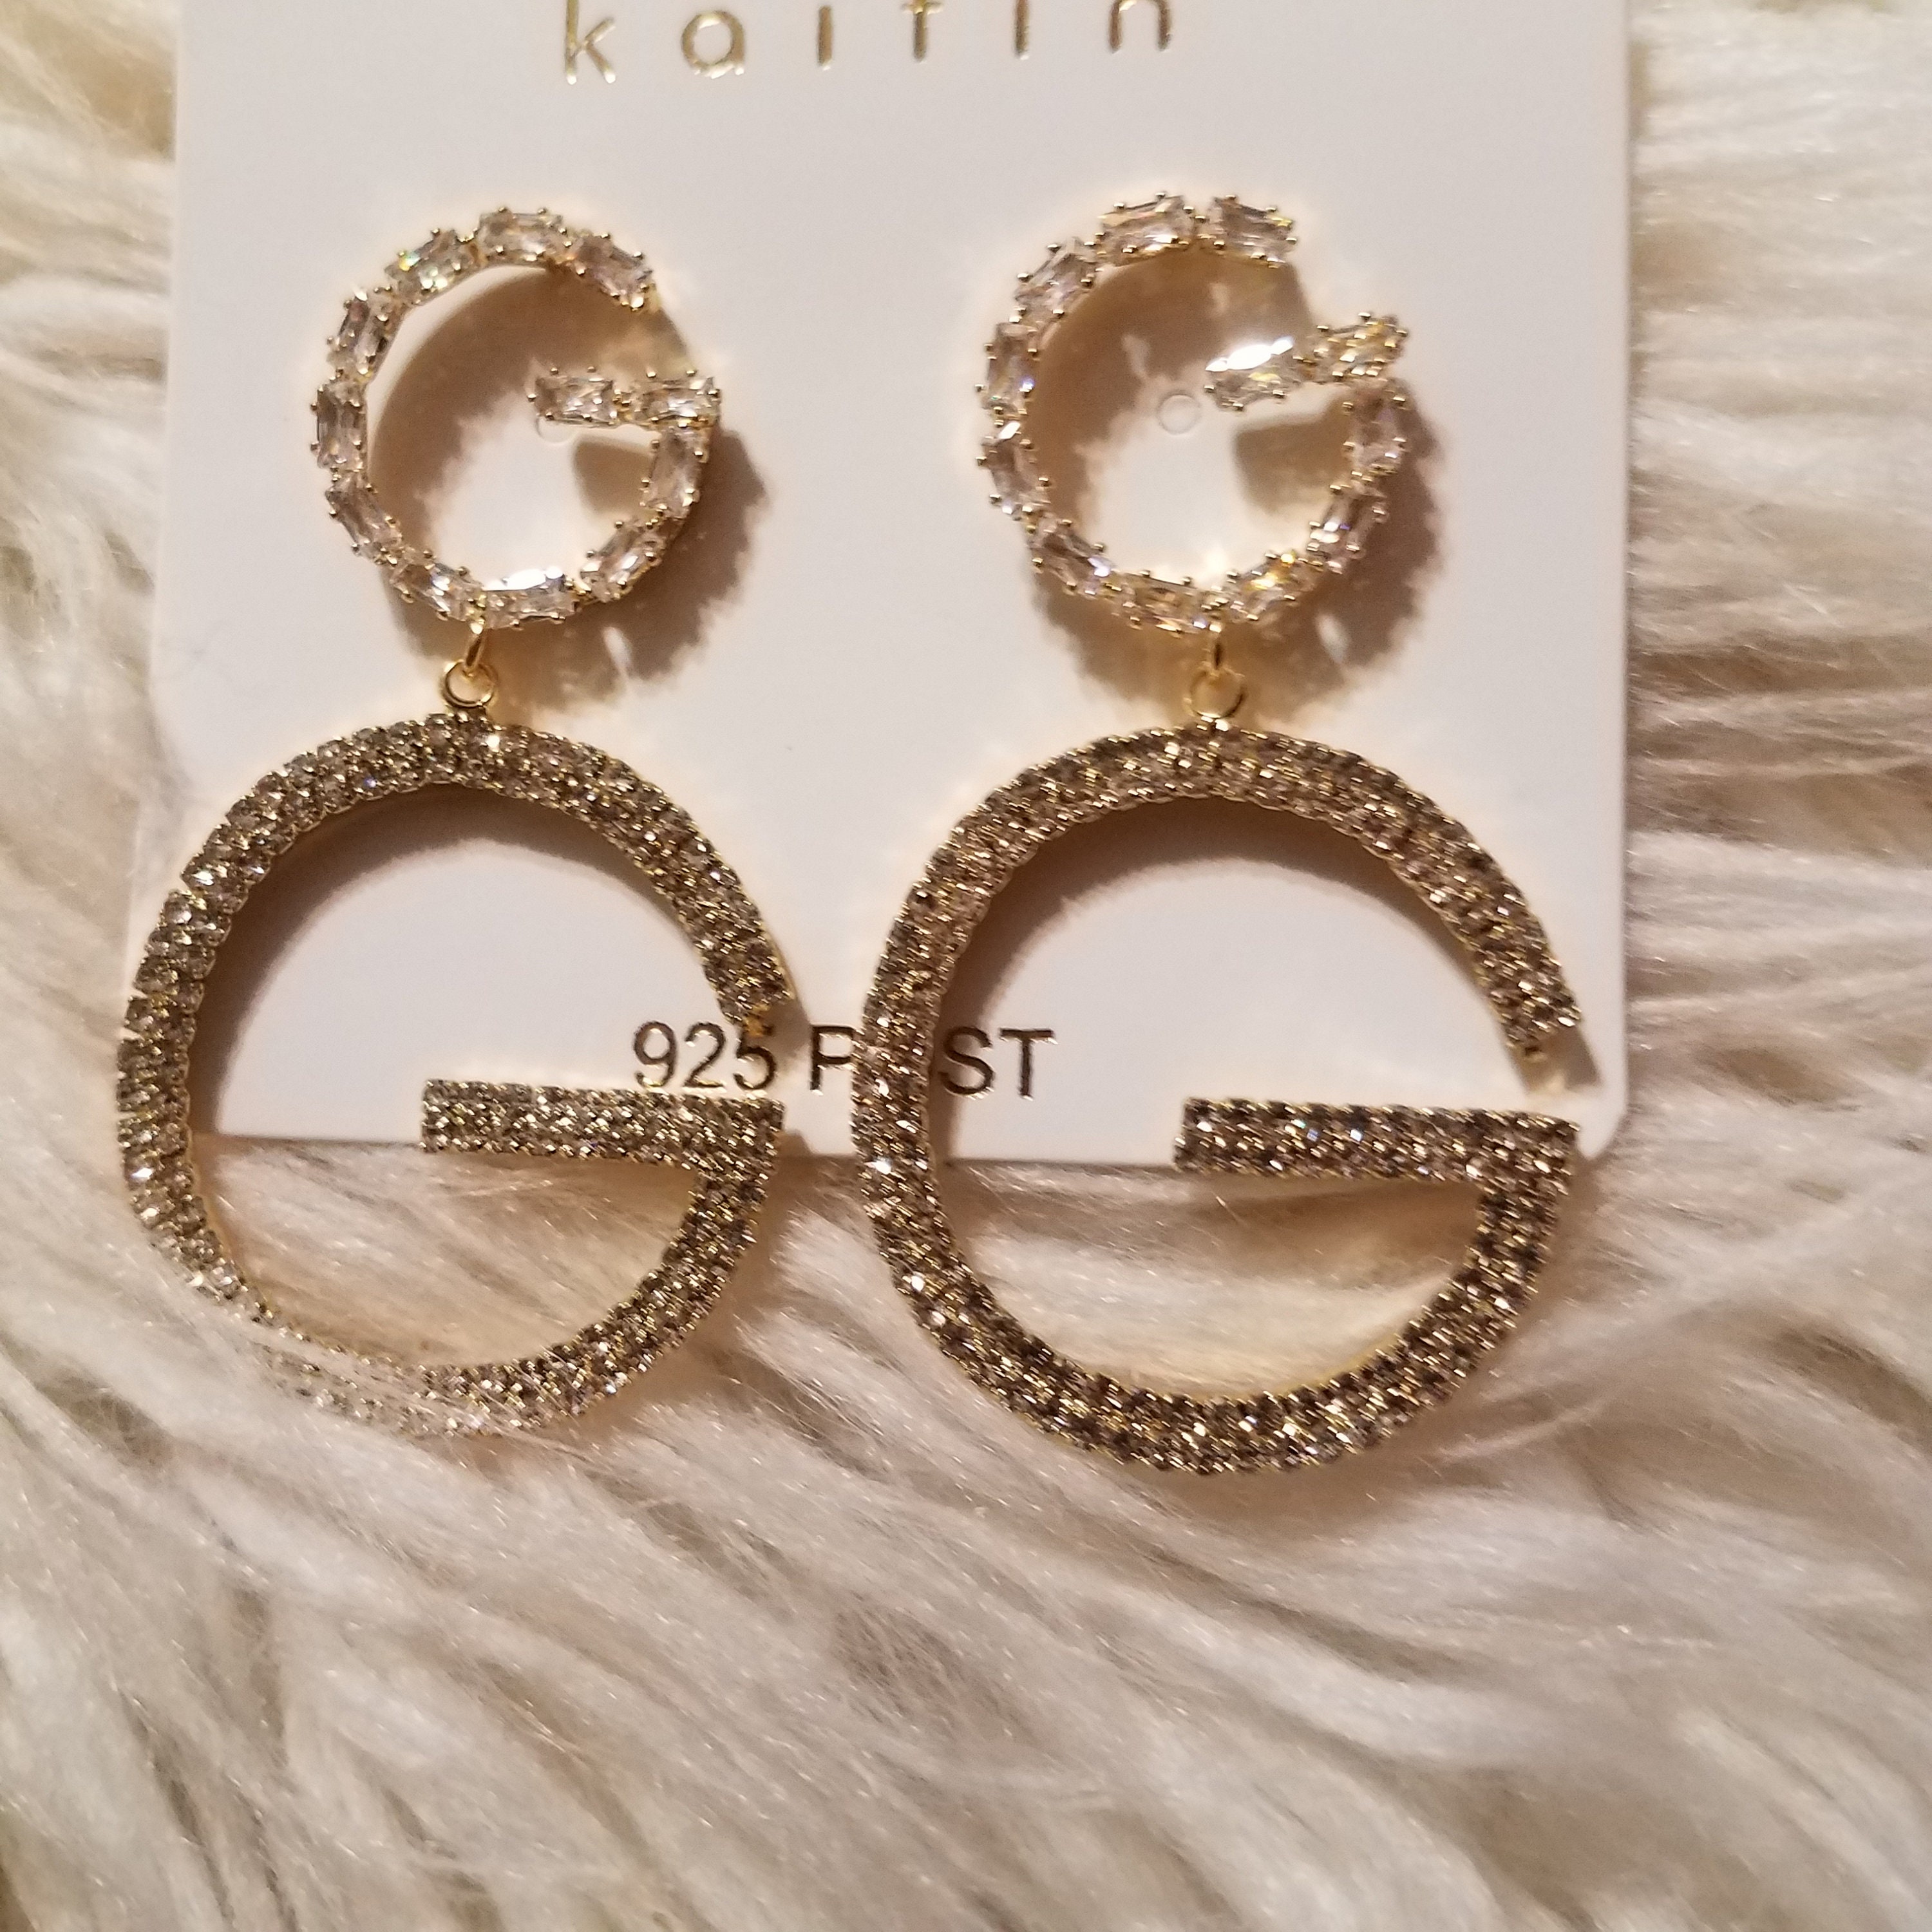 Luxury Rhinestone Letter G Earrings Classy | Etsy